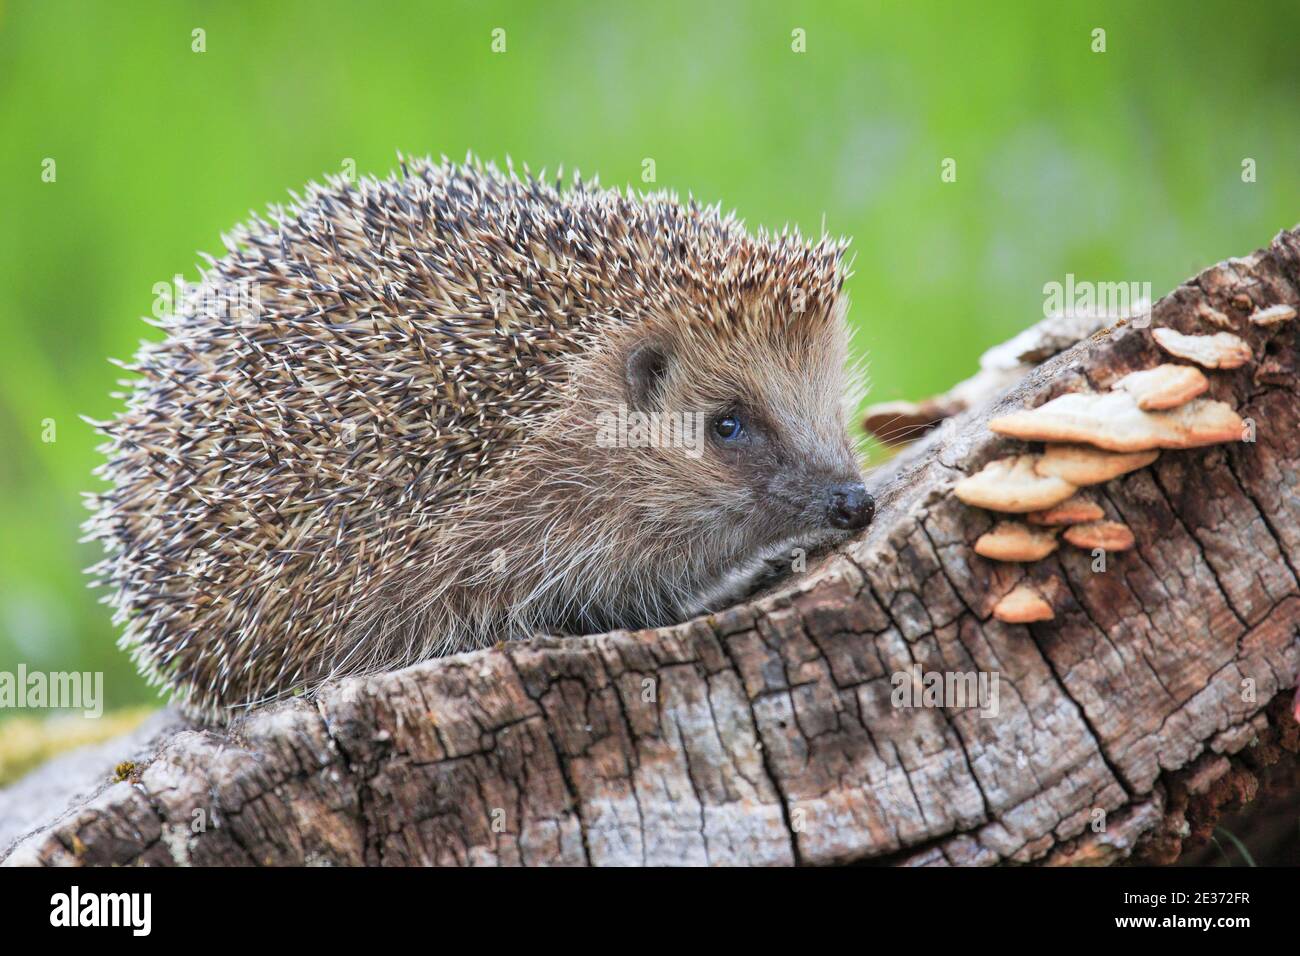 European hedgehog (Erinaceus europaeus), Switzerland Stock Photo